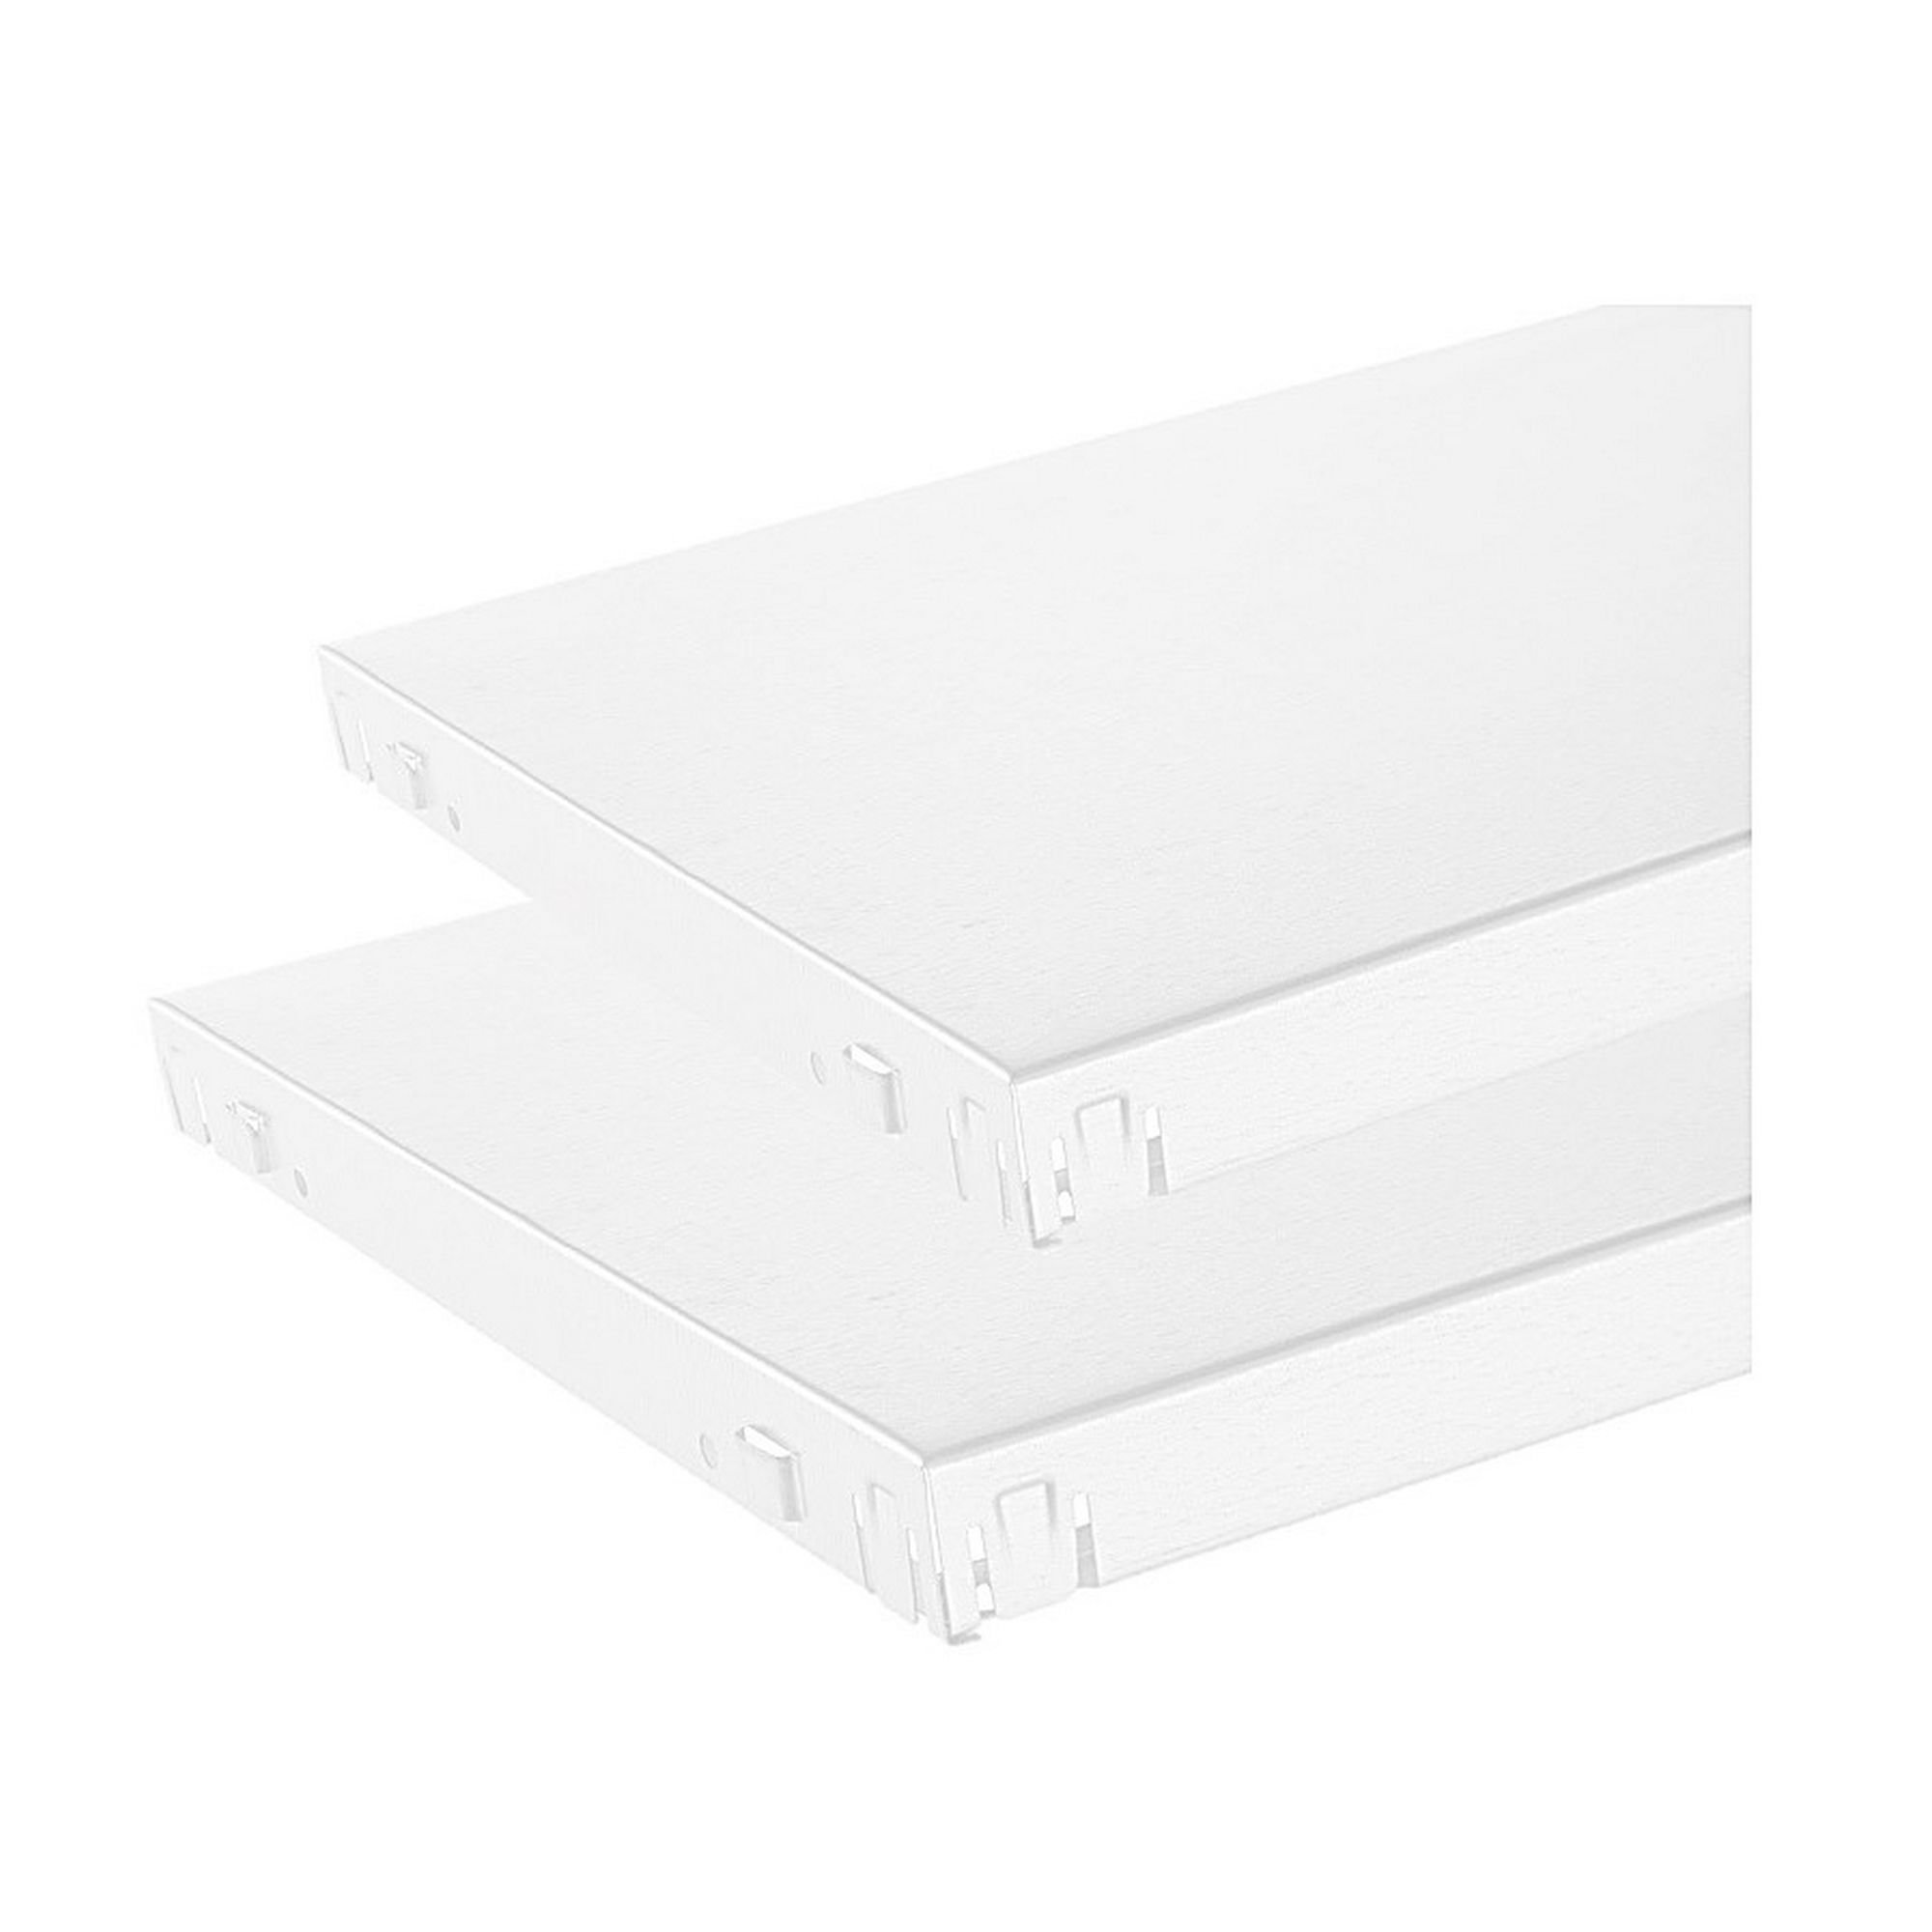 Stecksystem-Fachböden 120 x 50 cm, 2 Stück weiß + product picture